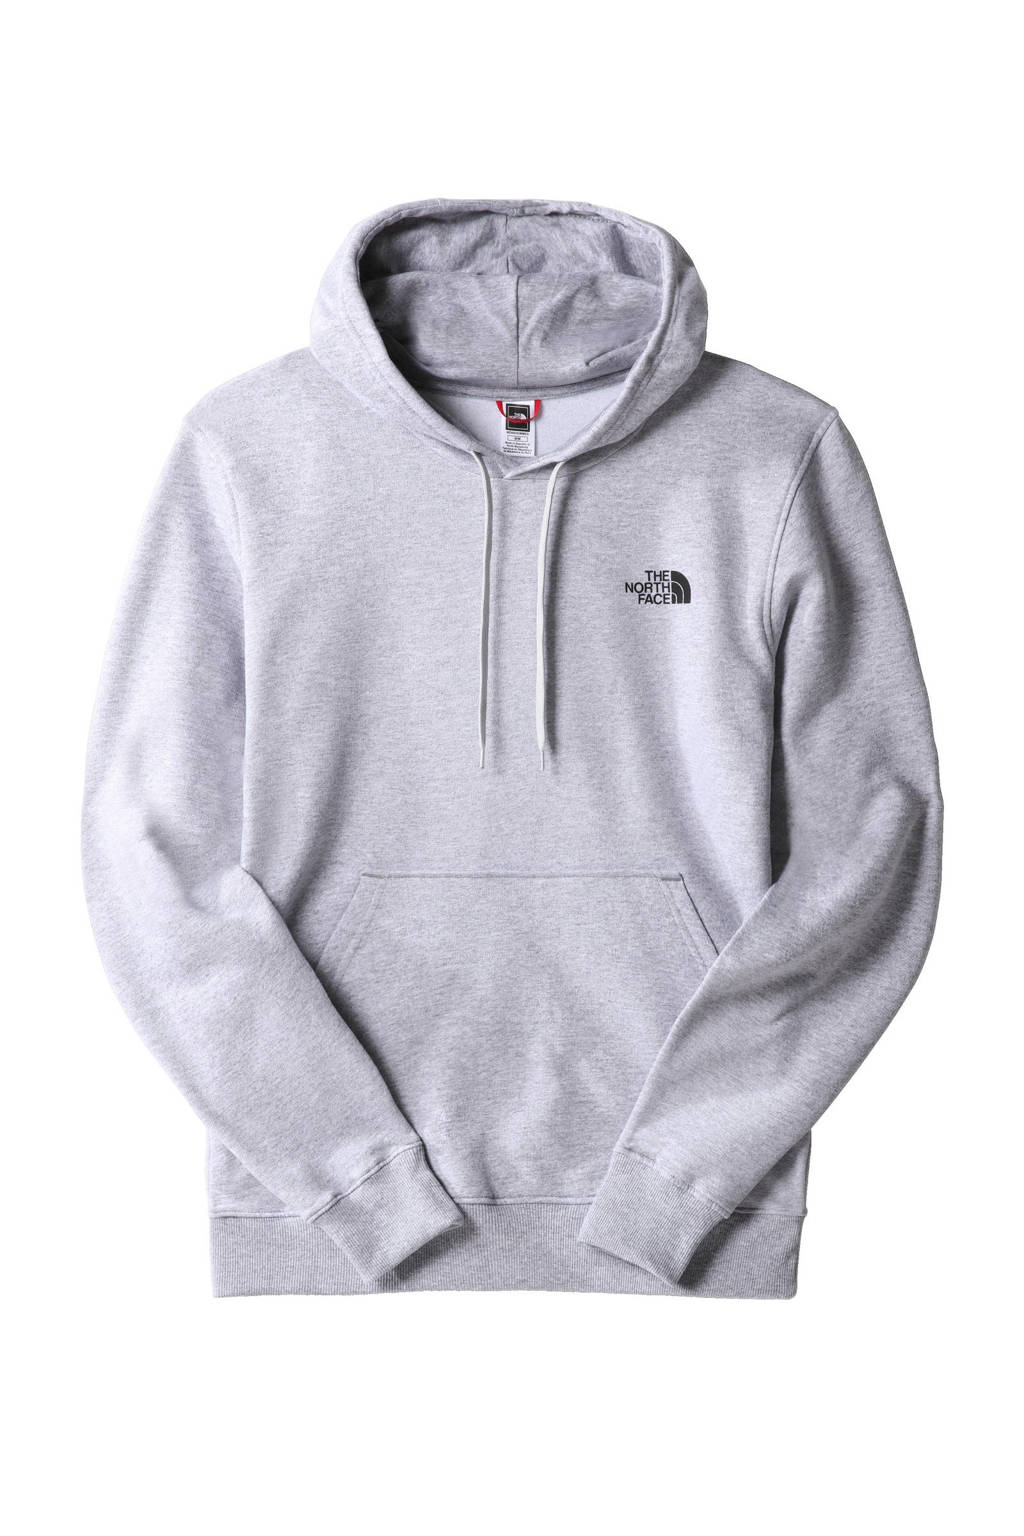 Passend Aja schelp The North Face hoodie met logo grijs | wehkamp